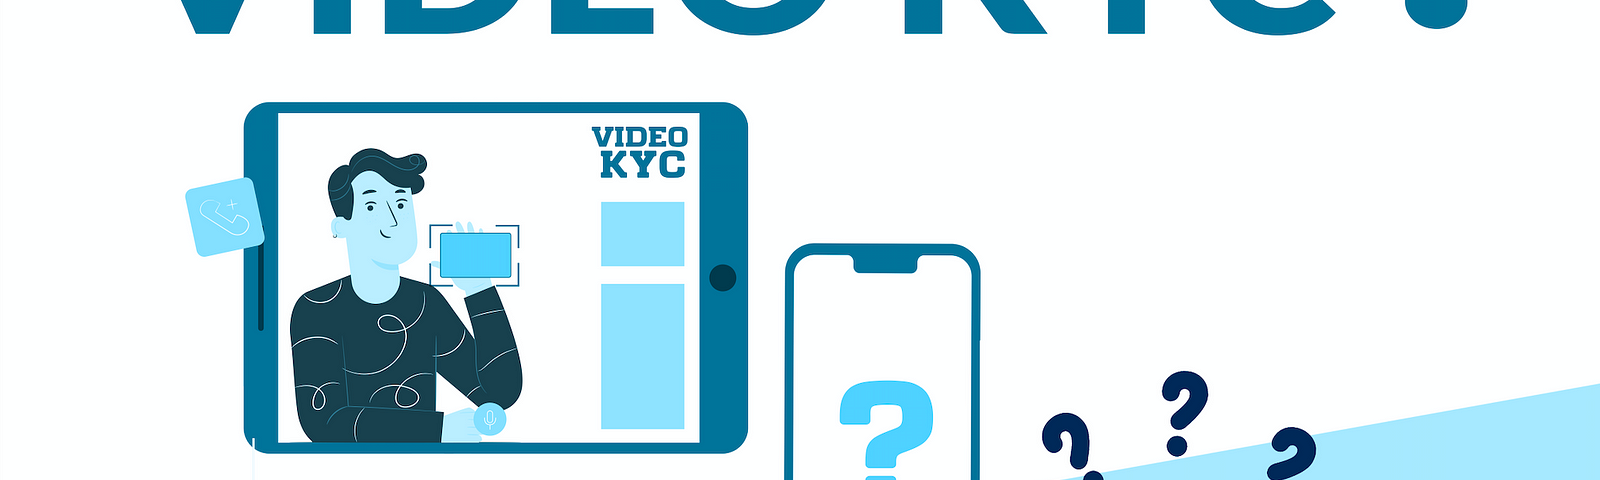 VideoKYC | Fintech | Banking